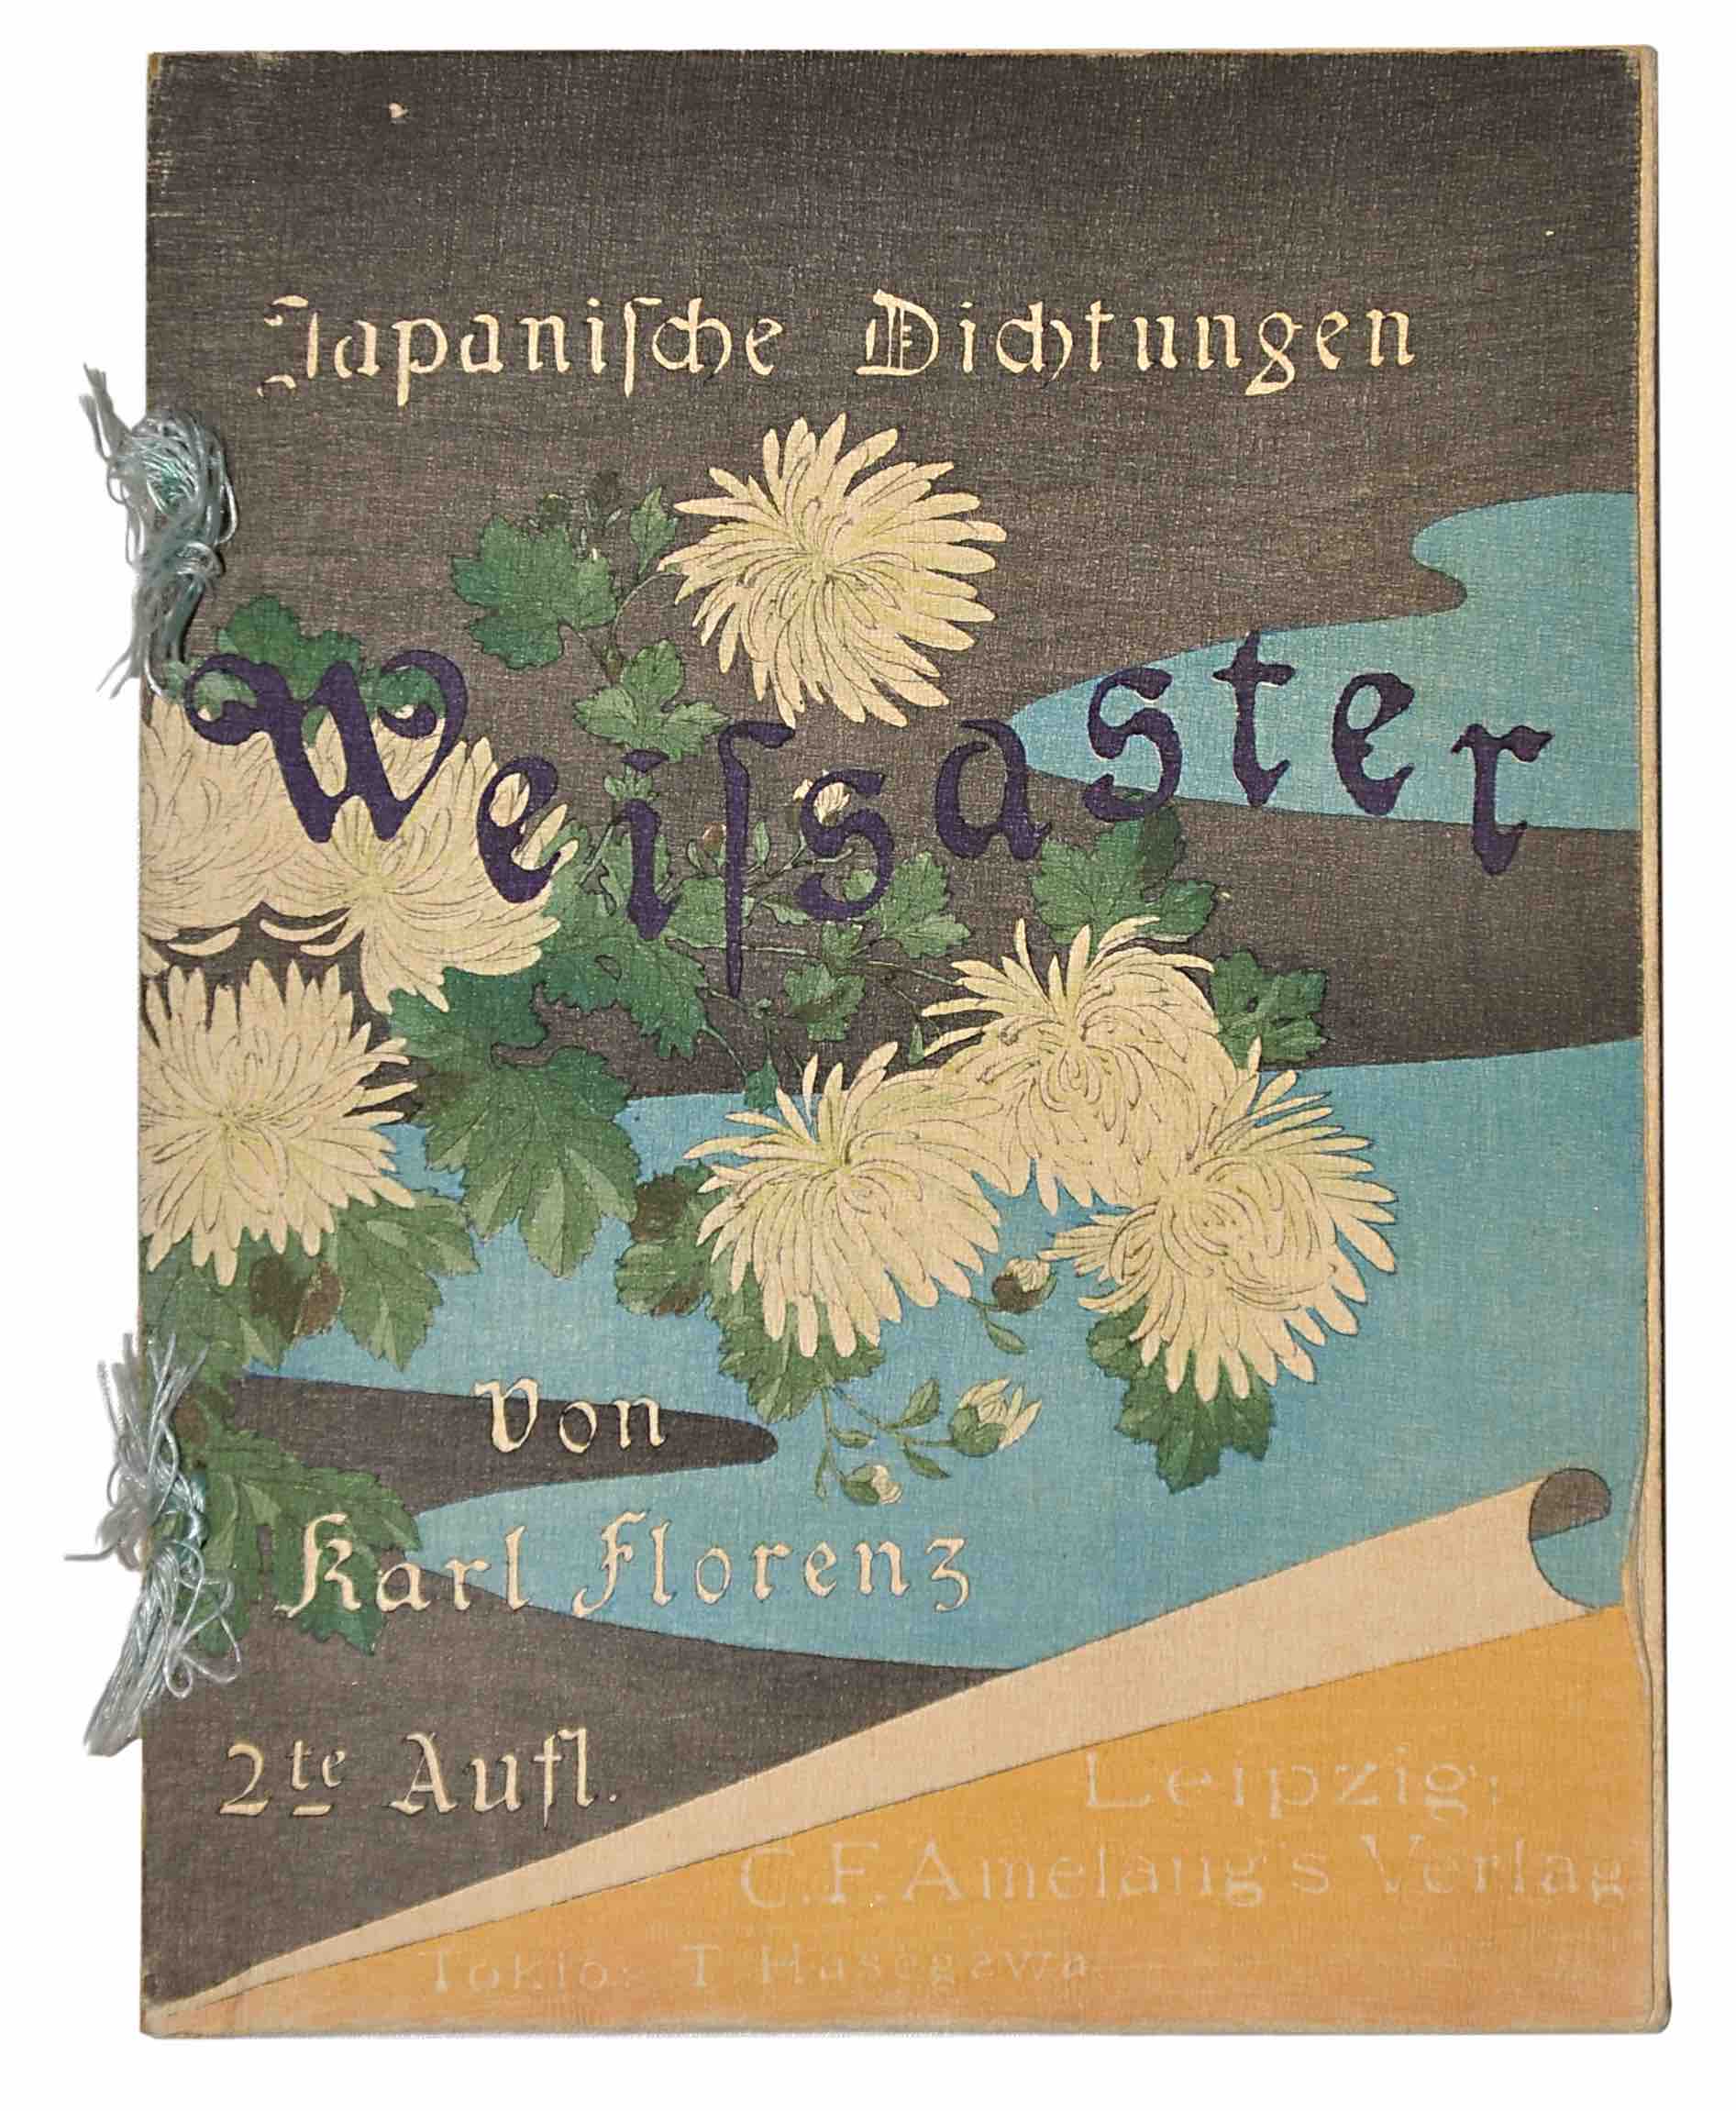 FLORENZ, KARL ADOLF (Transl.): - Japanische Dichtungen Weissaster. Ein romantisches Epos. Nebst anderen Gedichten. Zweite Auflage. Leipzig & Tokyo, Hasegawa, ca 1898.